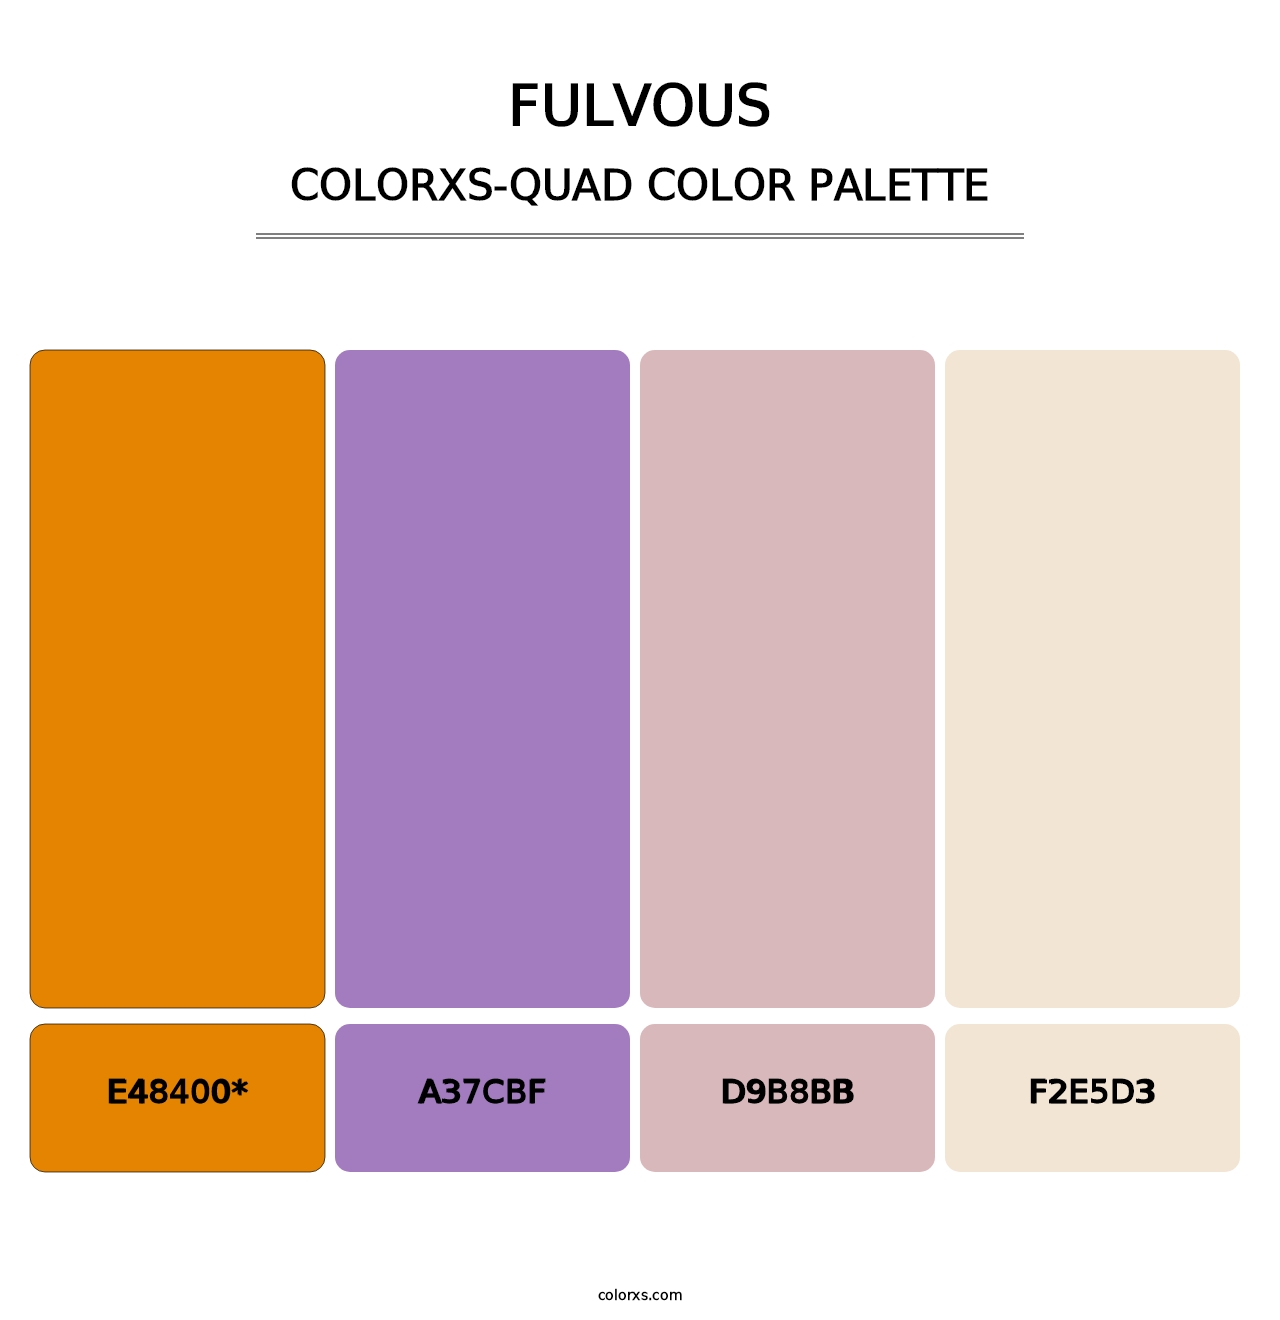 Fulvous - Colorxs Quad Palette